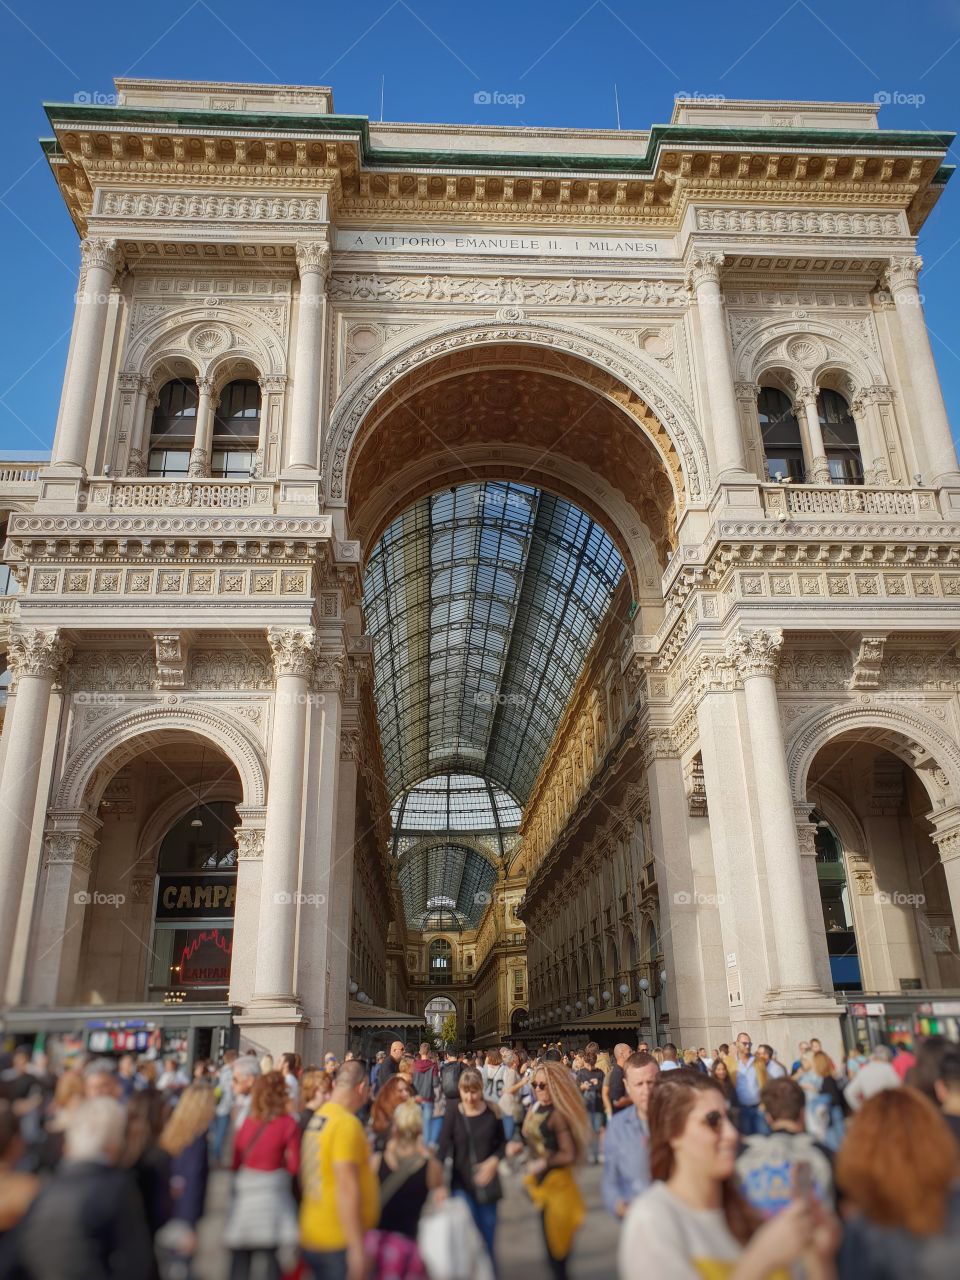 Galleria Vittorio Emanuele - Milan